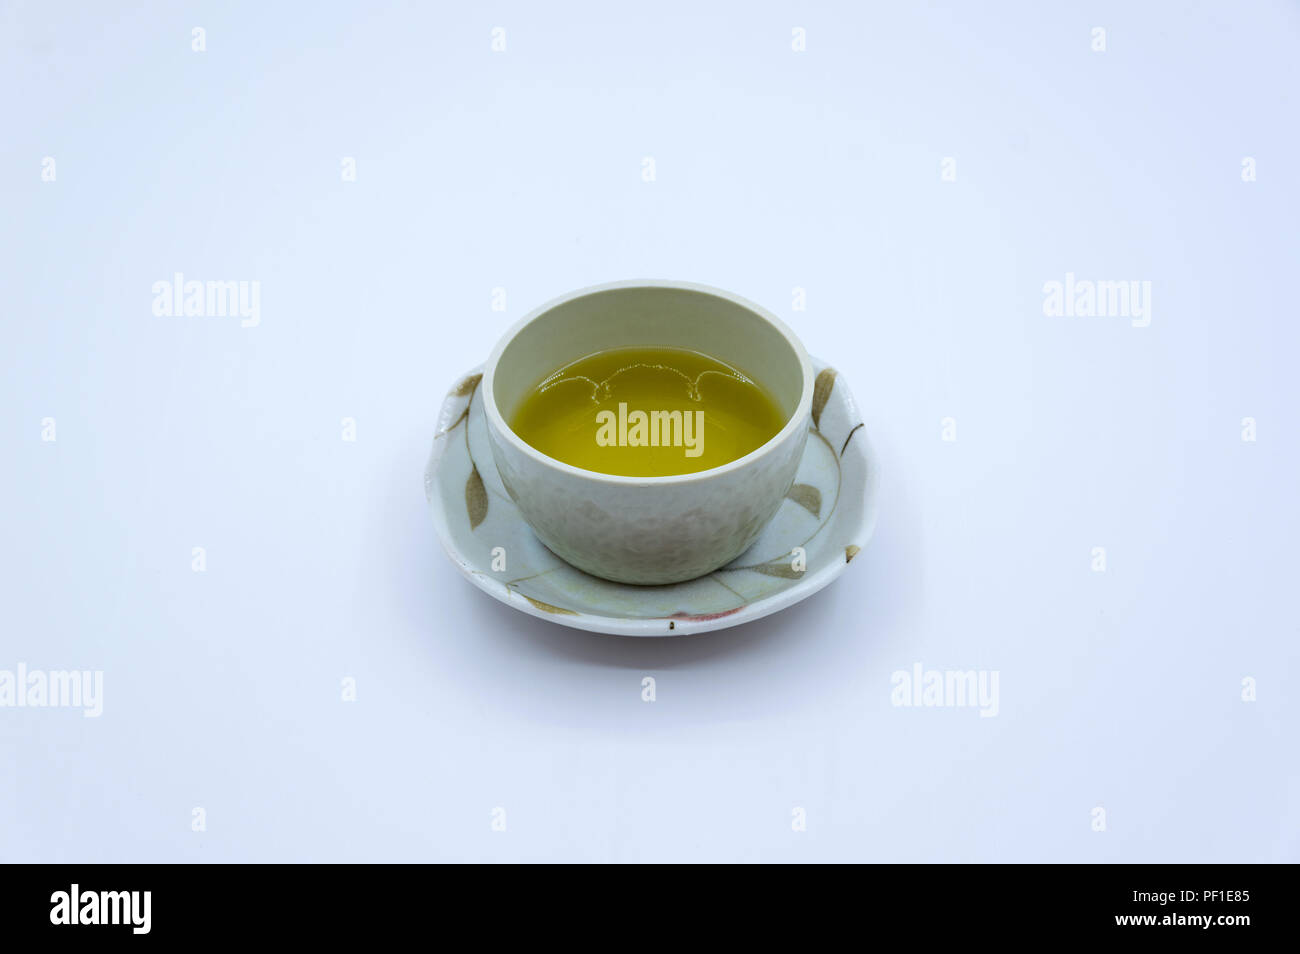 Le immagini utilizzate nel design, pubblicità sul set di preparazione per tè e caffè. Che fa parte della cultura dei popoli asiatici. Non solo usato per bere, è sia un'arte e vita Foto Stock